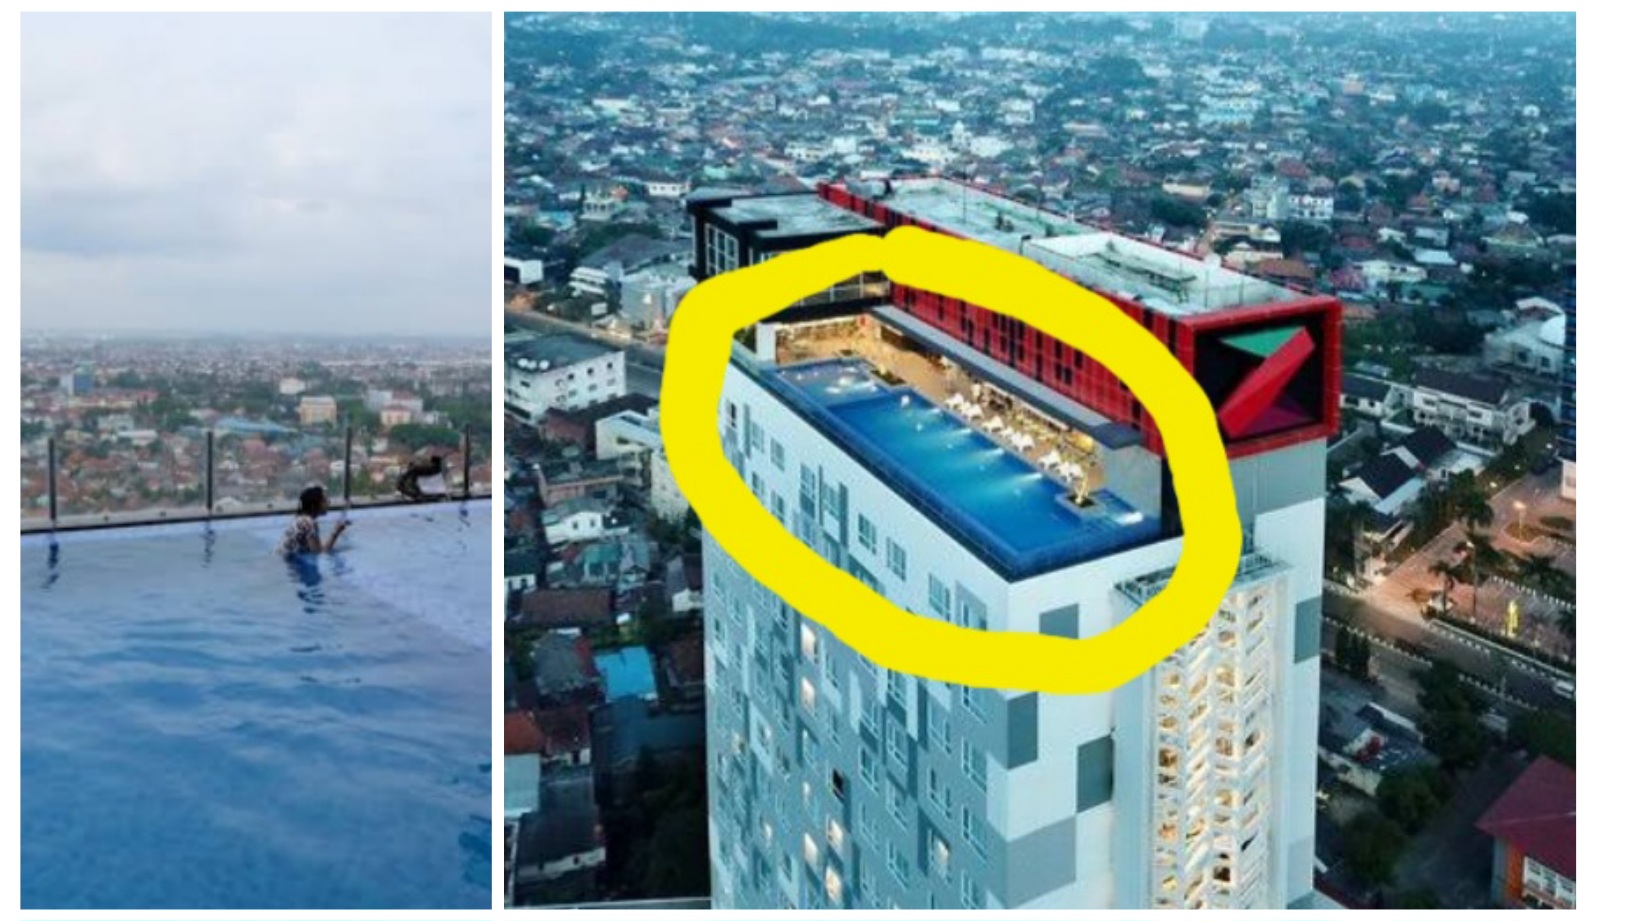 Tantang Adrenalinmu Berenang di Kolam Hotel Tertinggi di Palembang, Berasa di Atas Awan